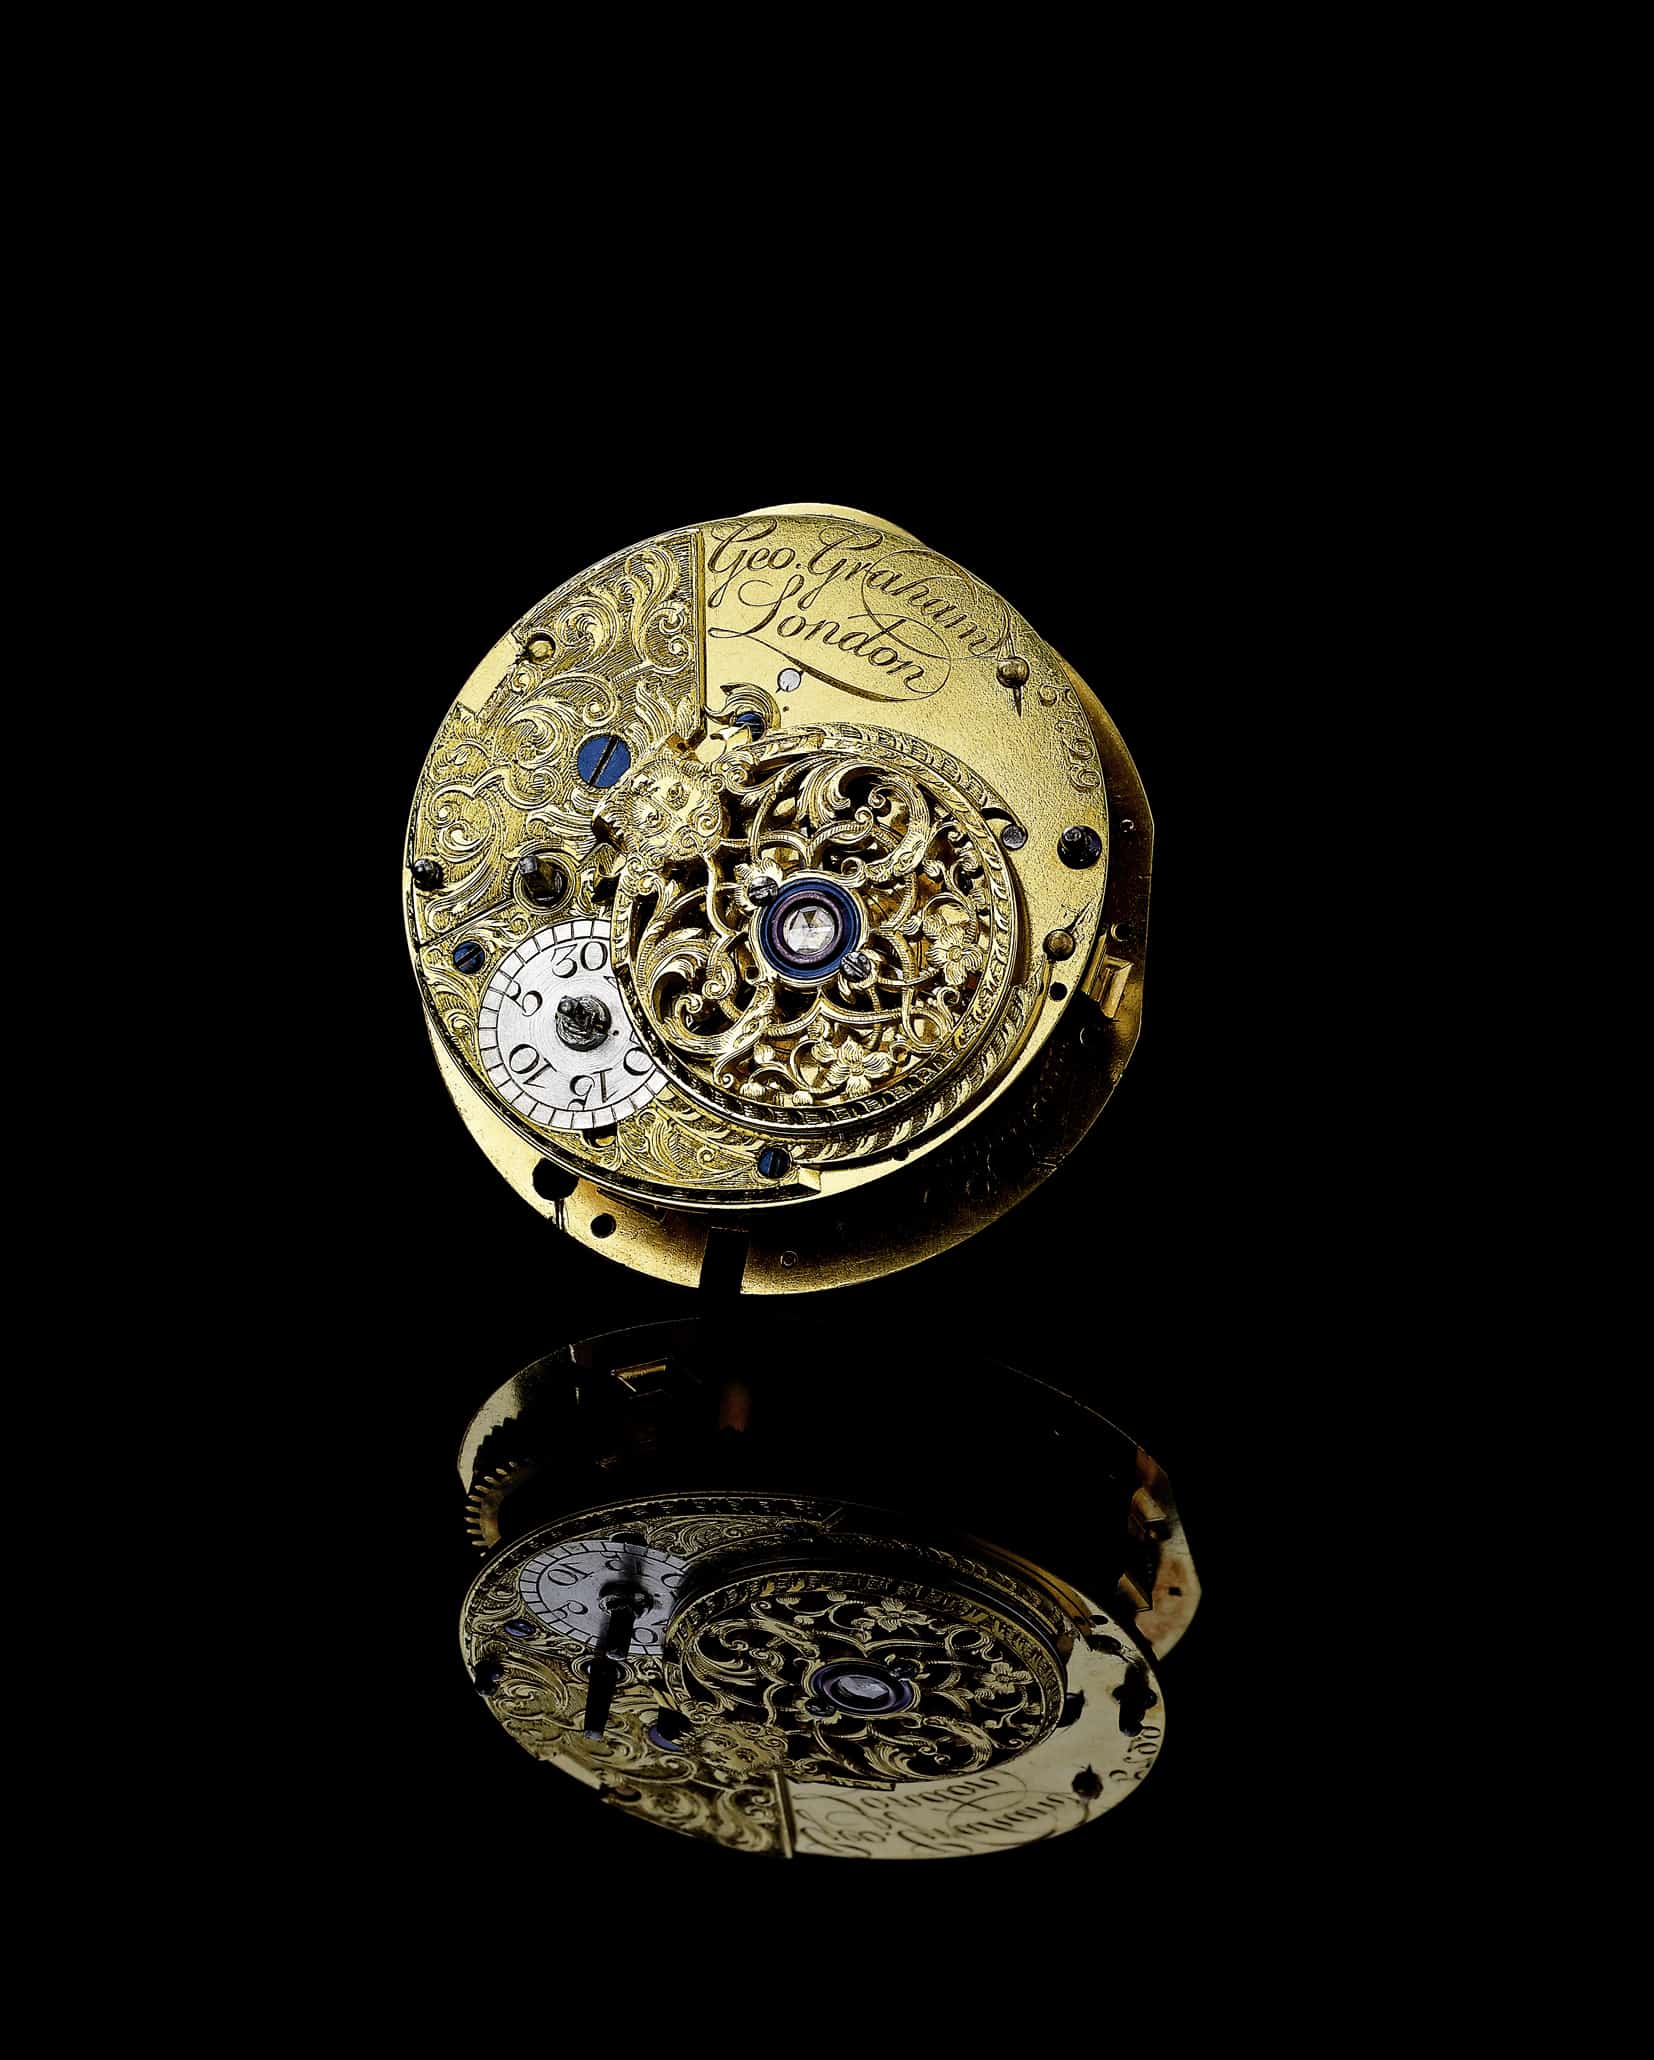 Ein Original-Uhrwerk von George Graham, dem englischen Uhrmacher und Erfinder